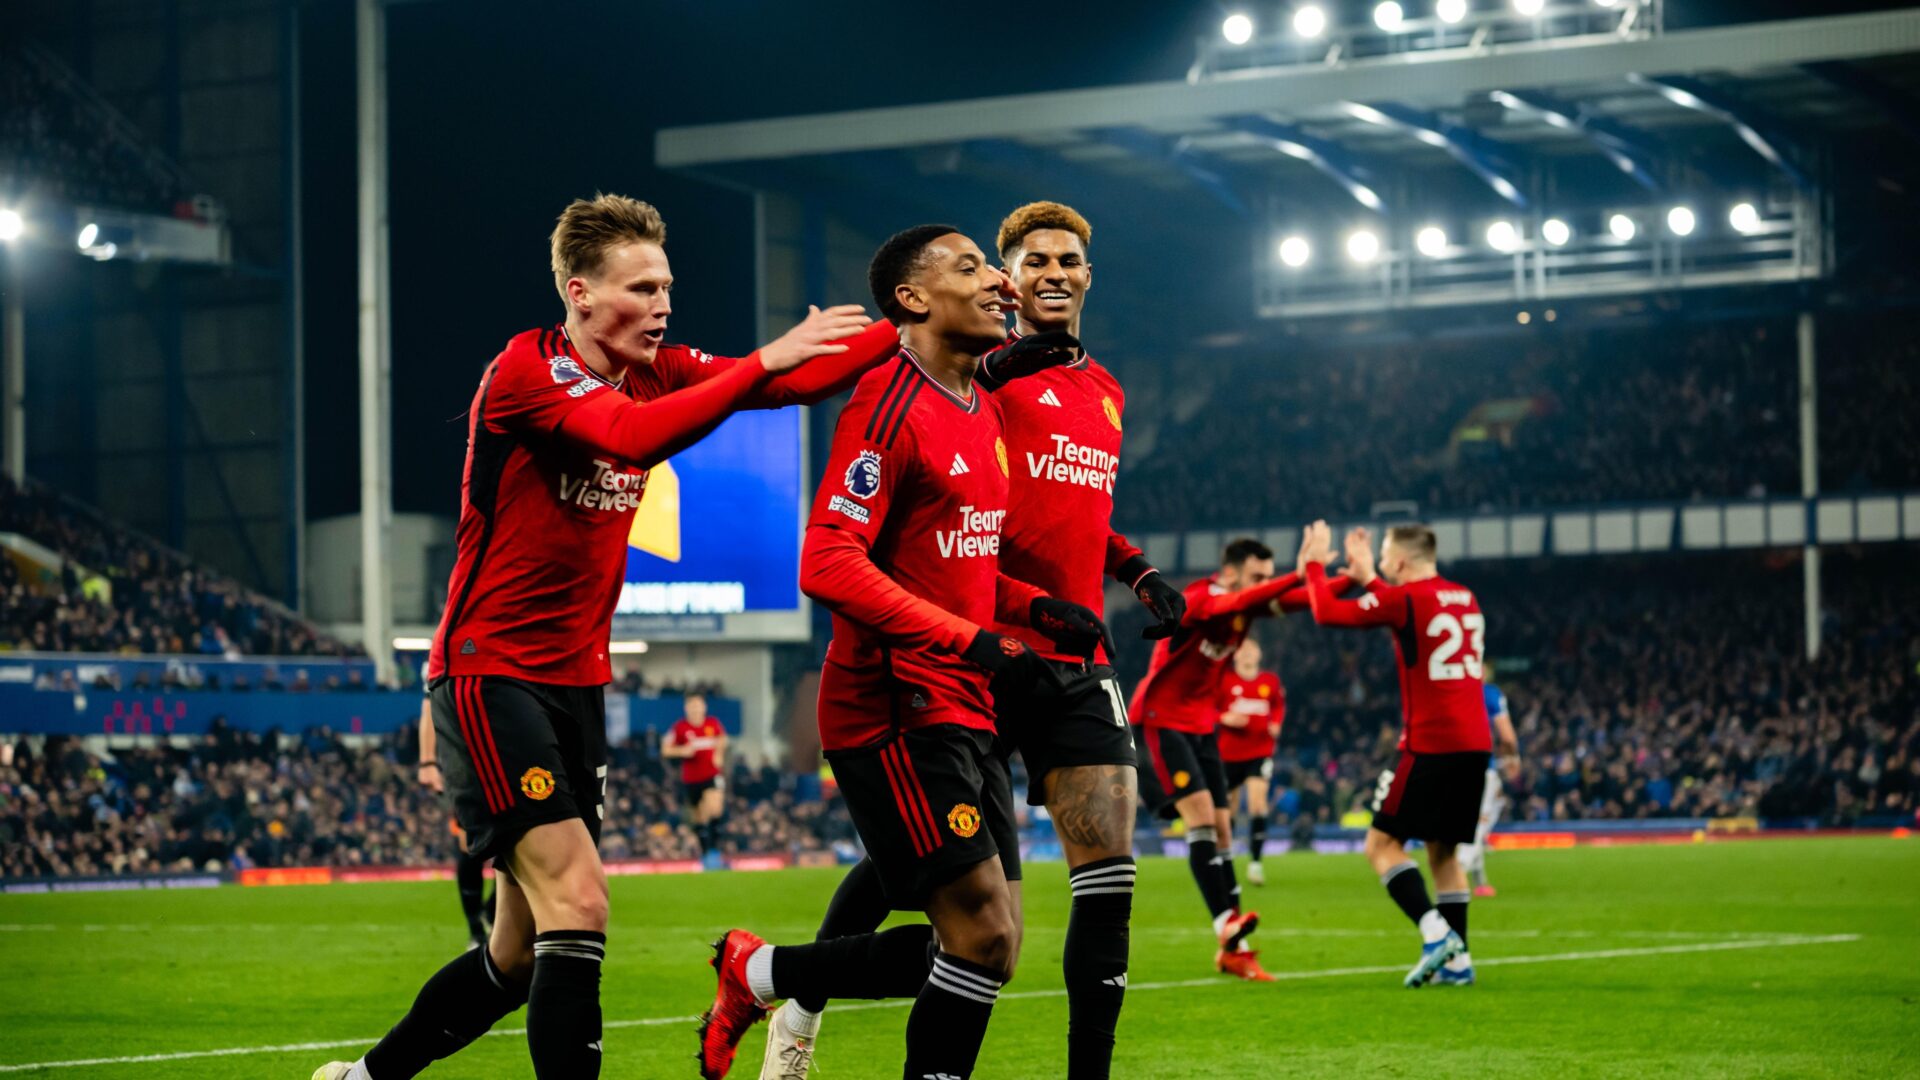 XAA-Desporto - PREMIER LEAGUE Manchester United empata fora de casa. O  Manchester United foi hoje ao reduto do Burnley empatar a um golo, em  partida referente à jornada 24 do campeonato inglês.